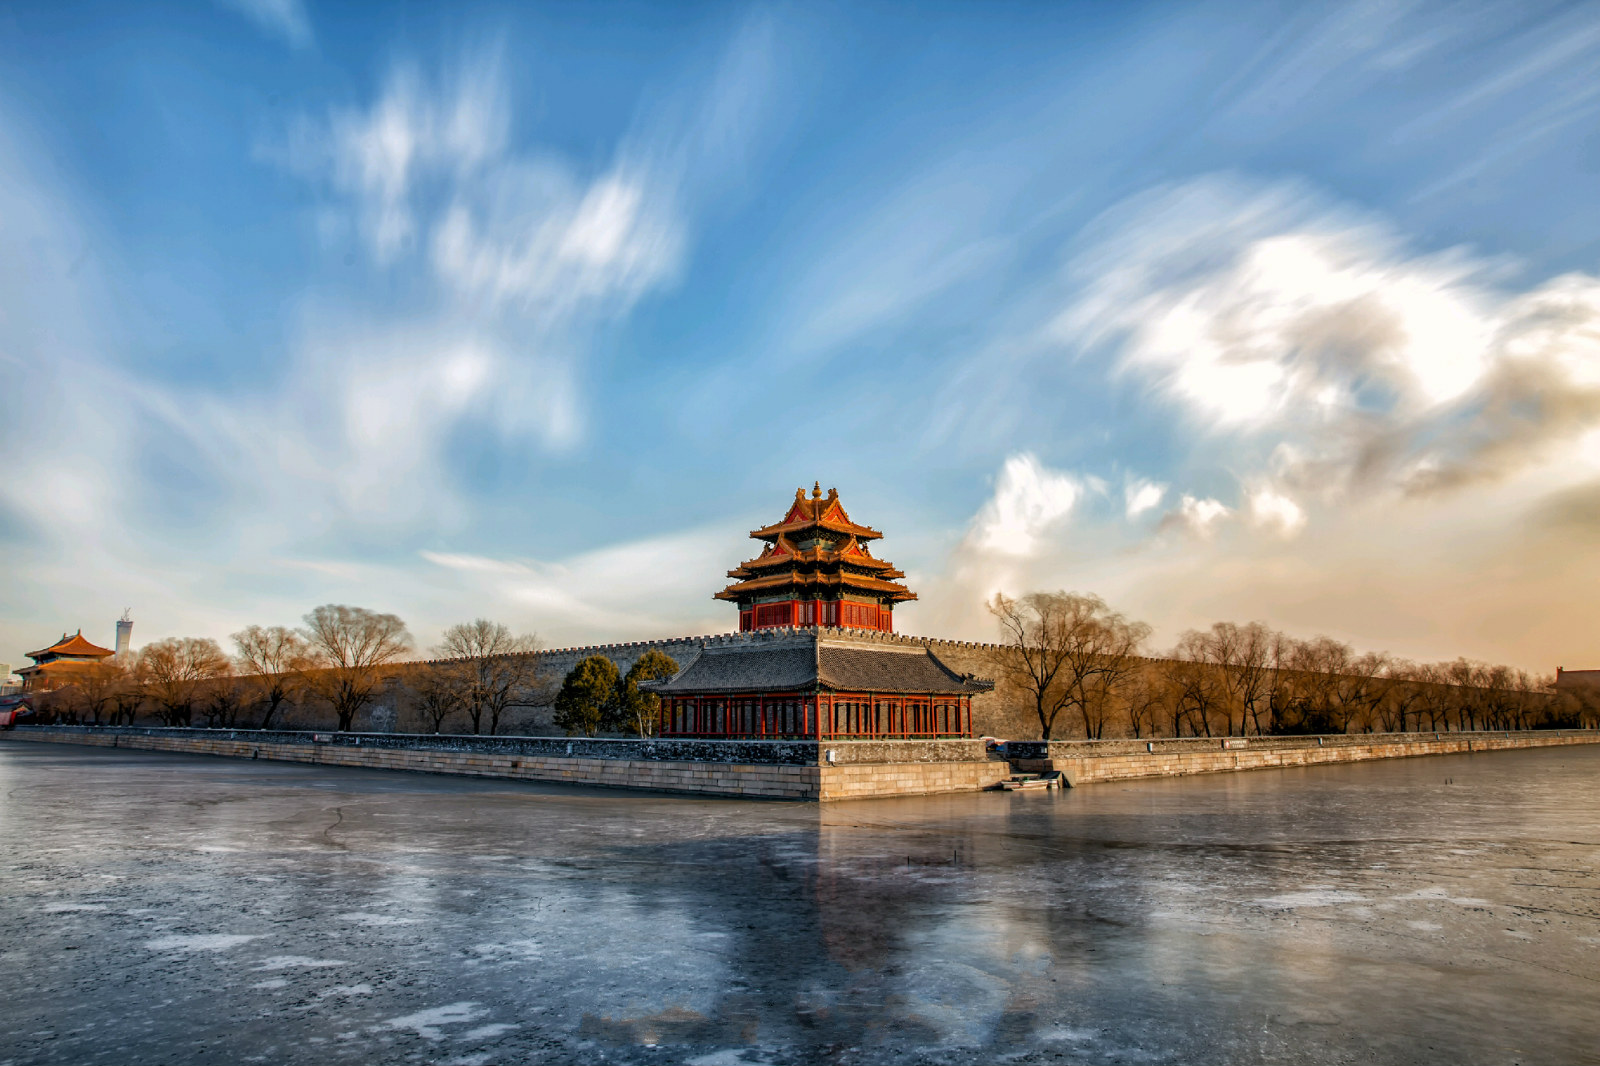 【携程攻略】北京颐和园景点,颐和园不愧是北京必去的景点之一，很是气派啊！中央的湖泊和长廊都是…